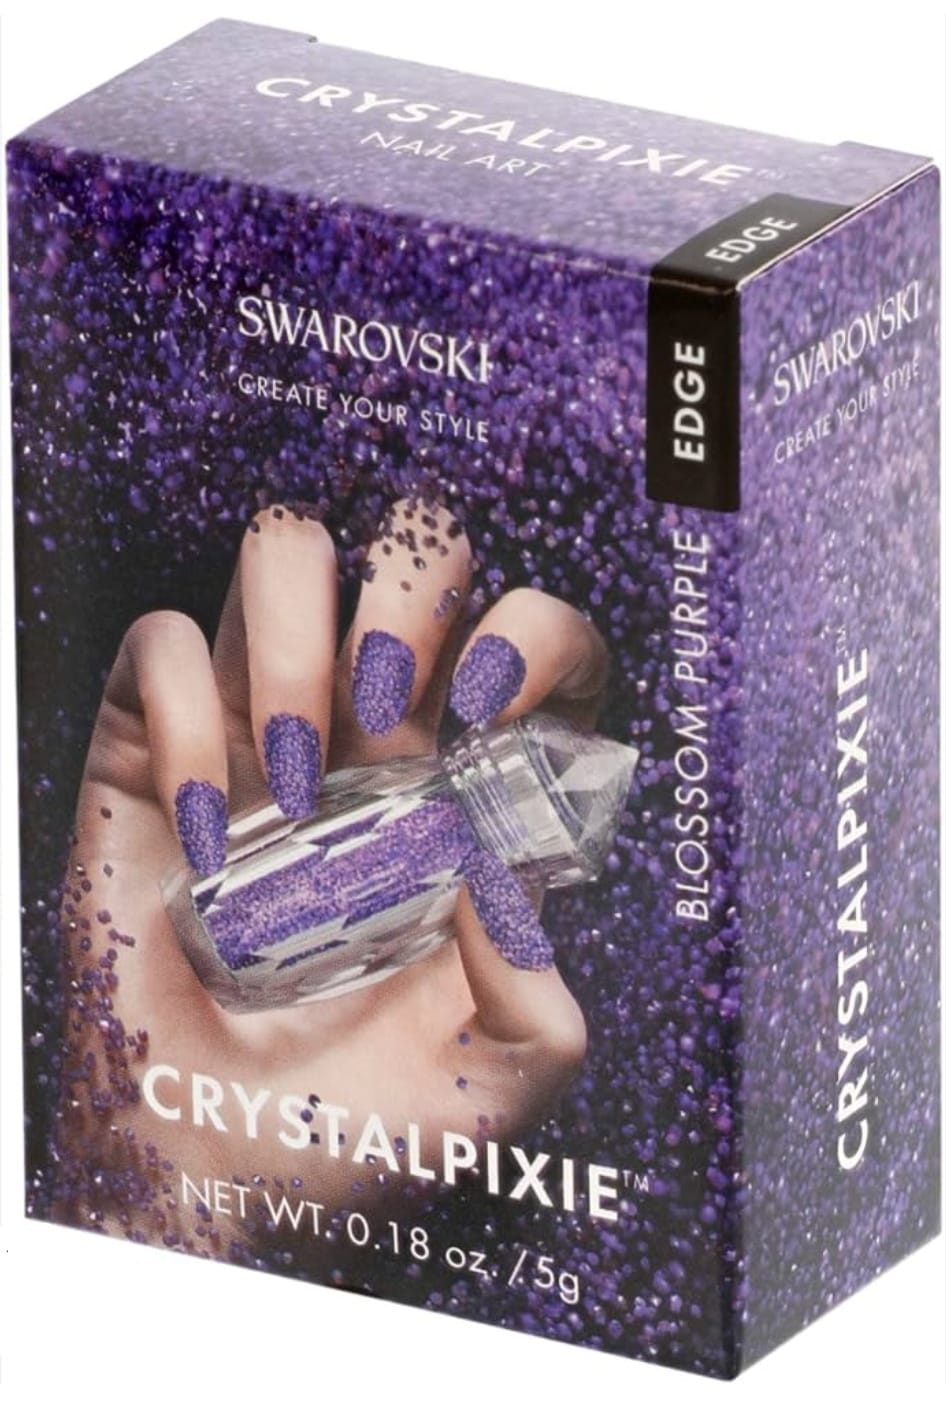 Swarovski® Crystal Pixies Edge-Pure Crystals Blossom Purple